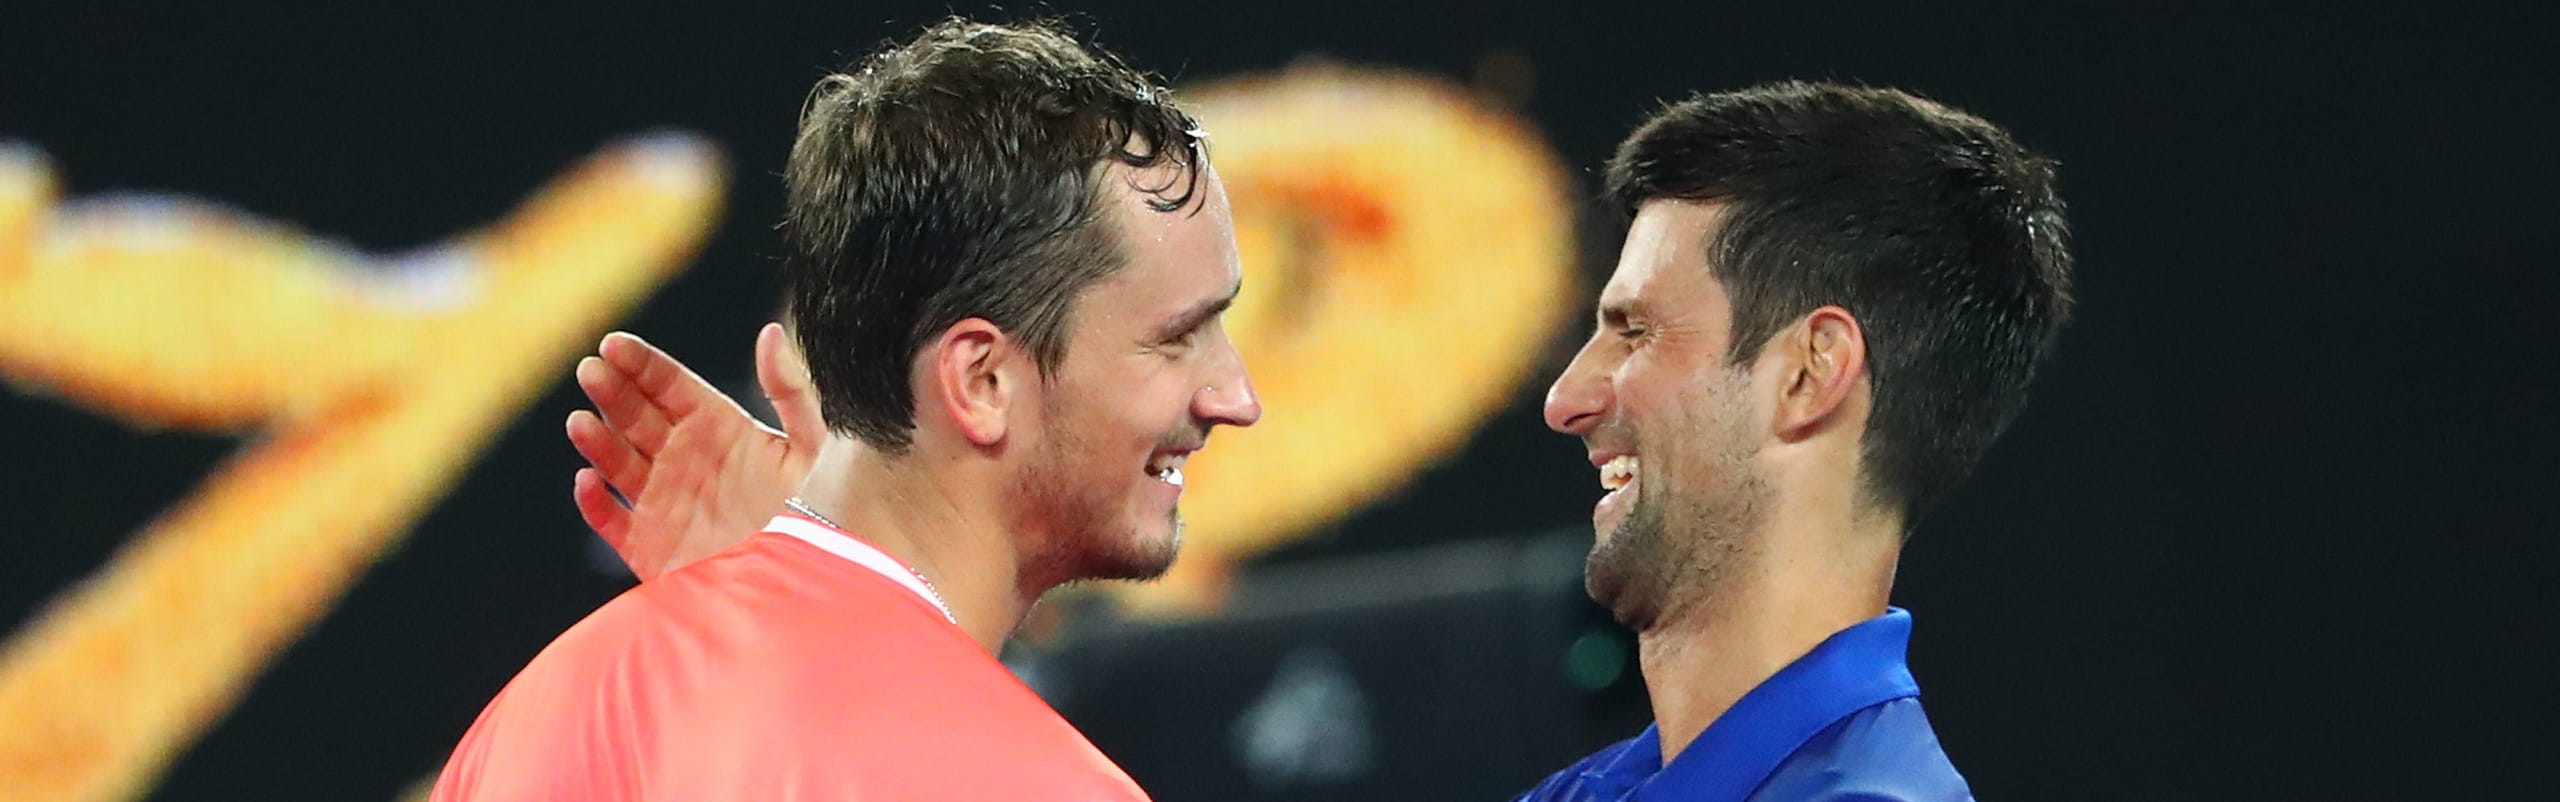 ATP Finals 2020, quote e consigli su Zverev-Schwartzman e Djokovic-Medvedev